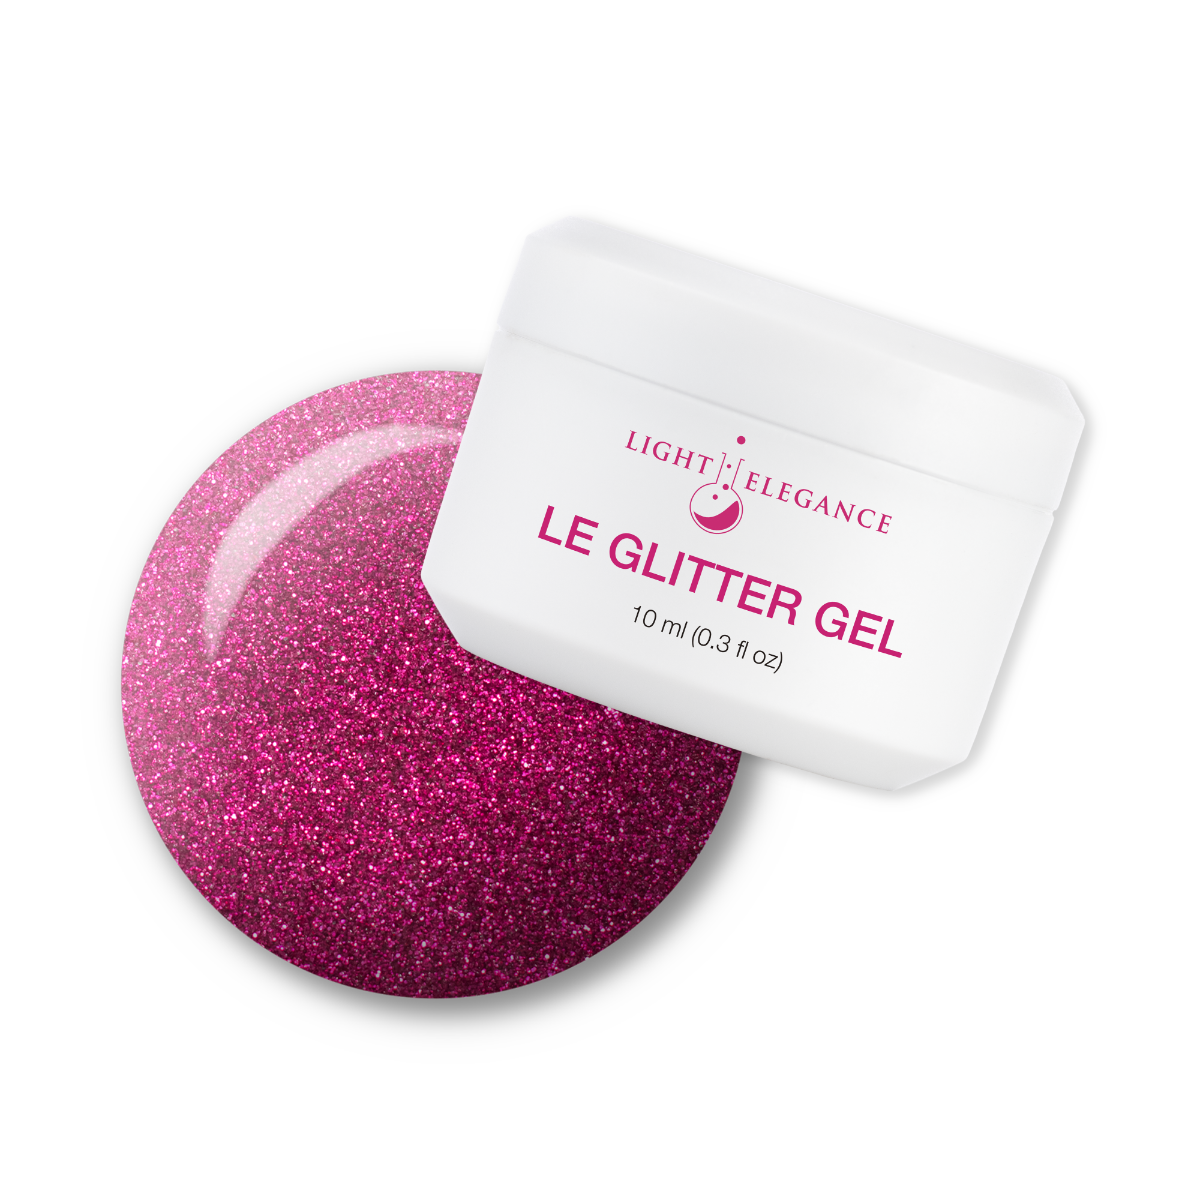 Light Elegance Glitter Gel - You're a Gem :: New Packaging